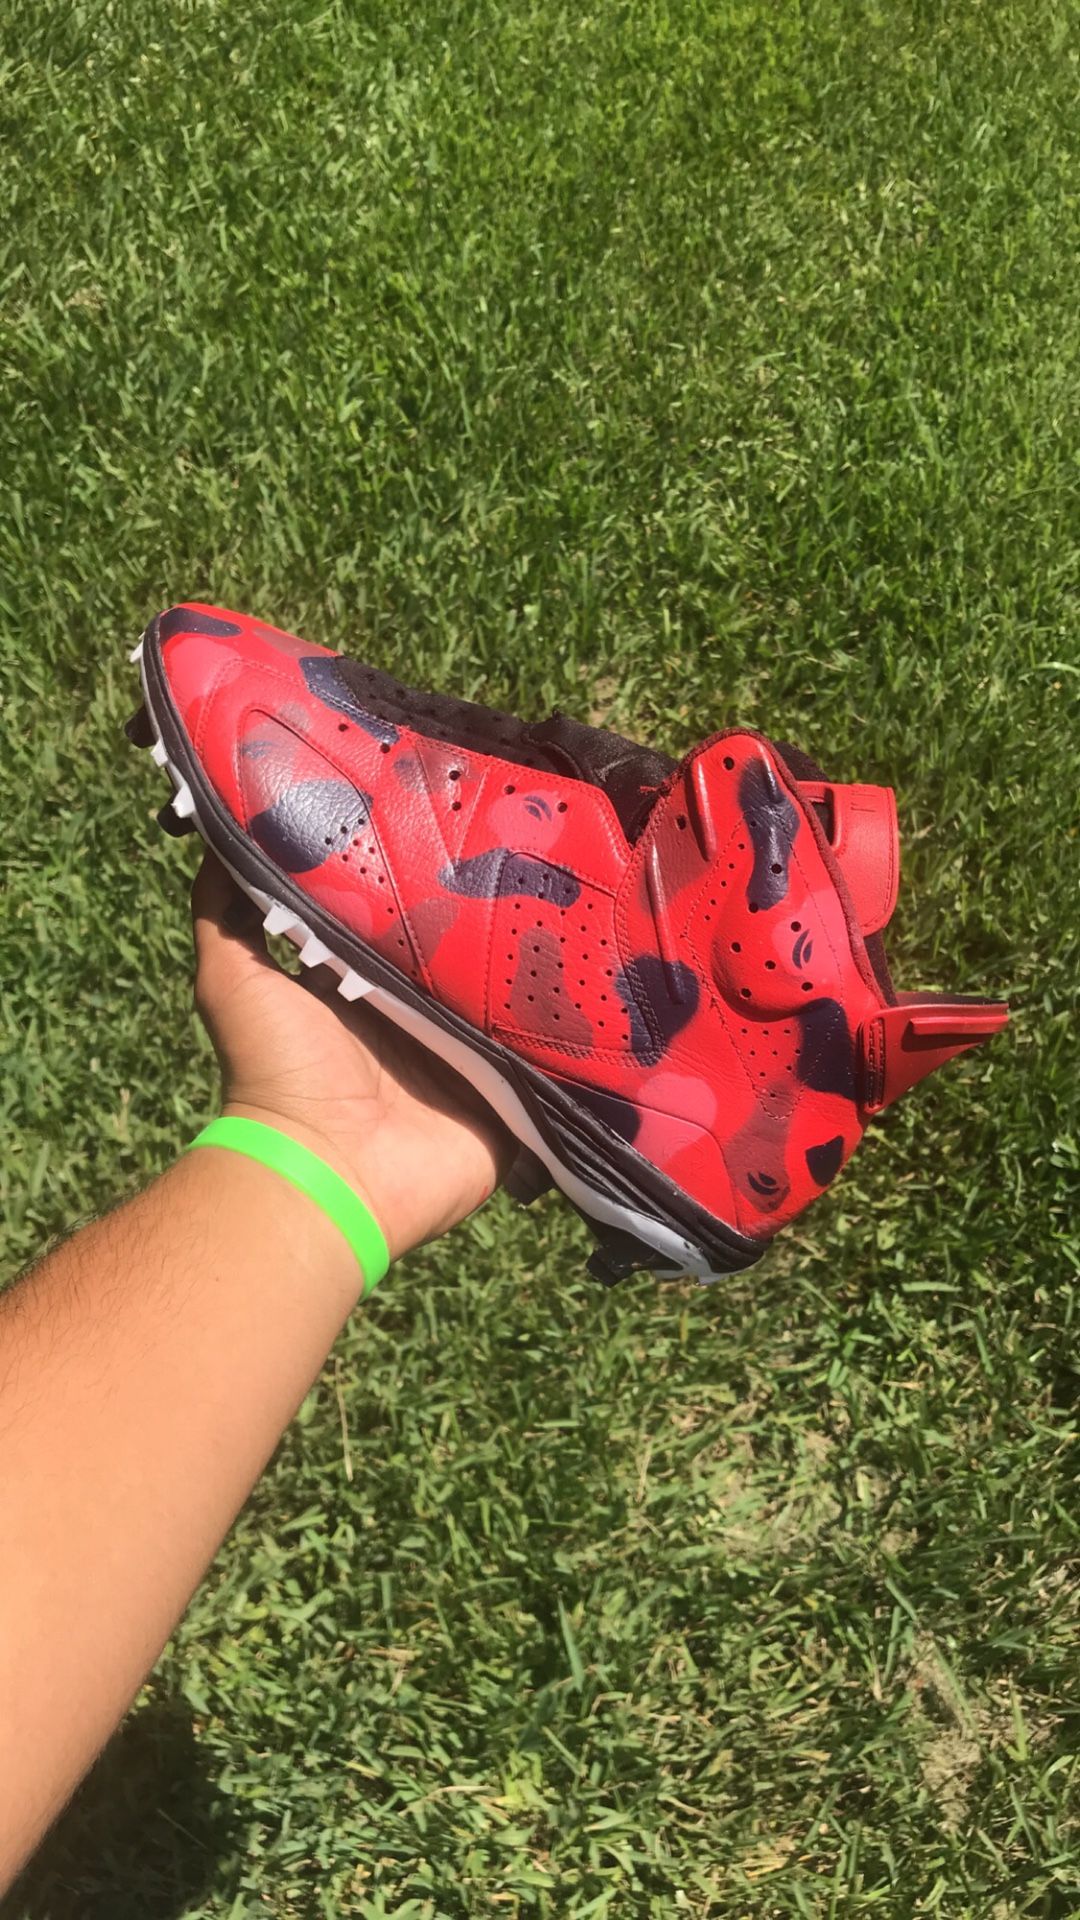 Air Jordan 6 football cleats custom “Bape” @kidsaucecustoms